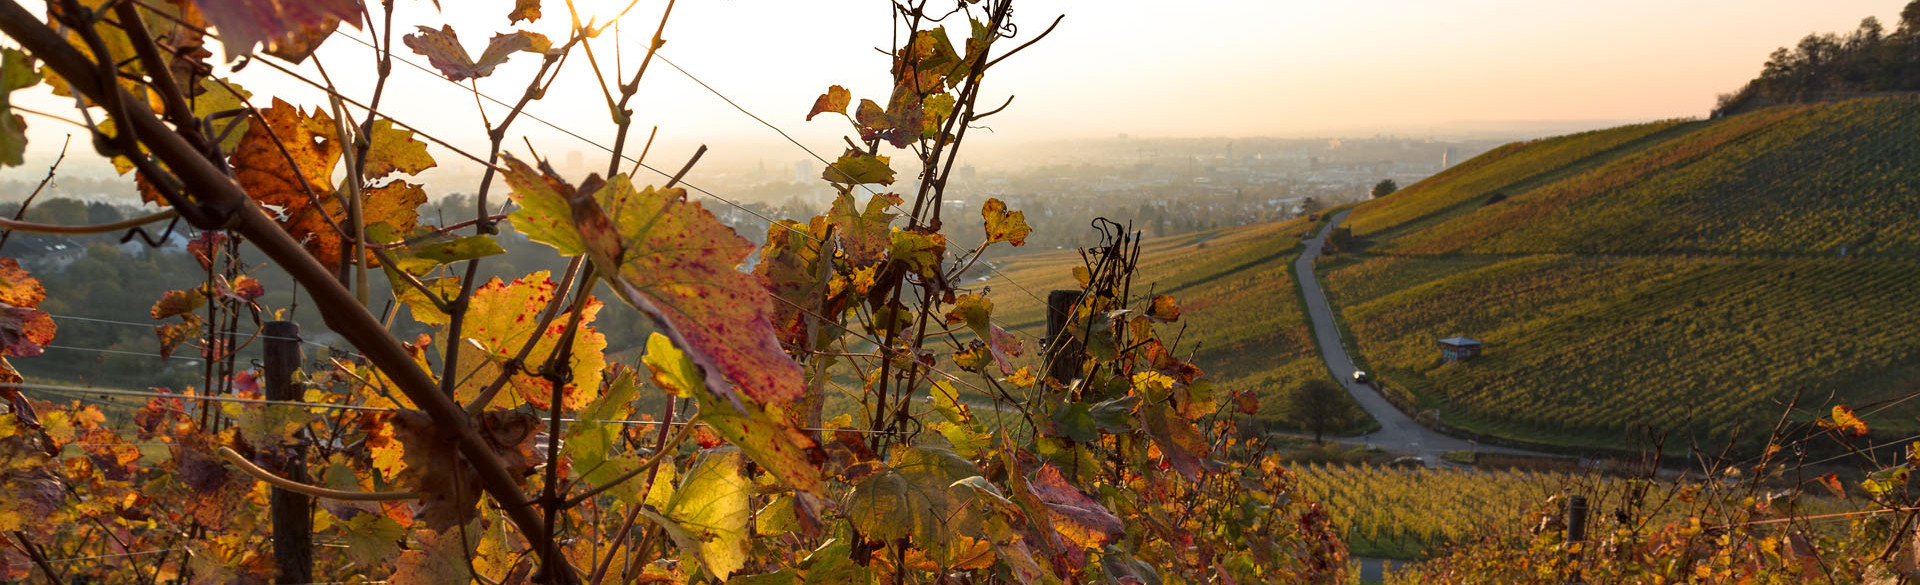 Der Wein Panorama Weg im Herbst